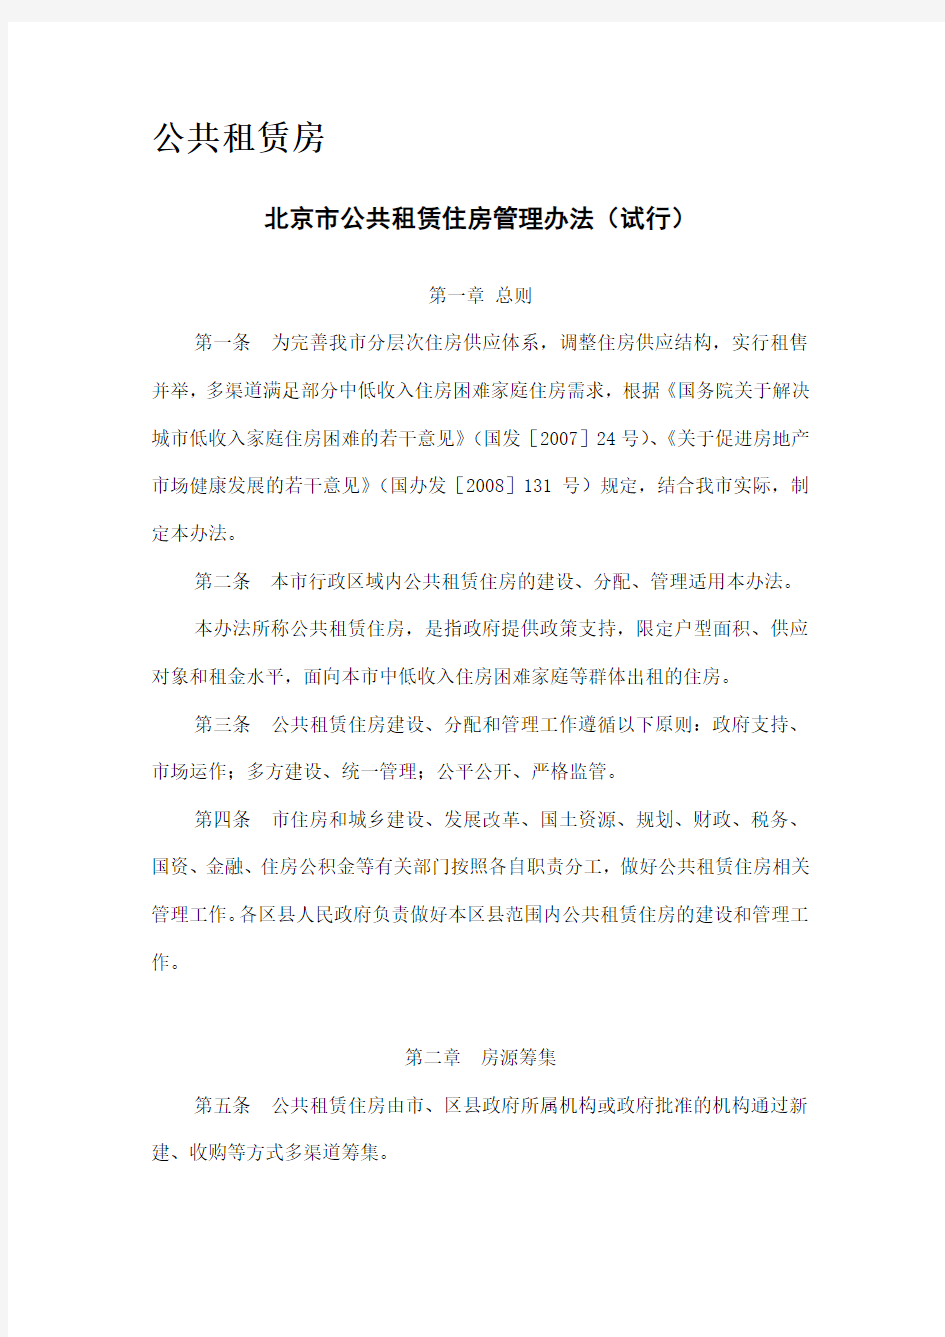 北京市保障性住房政策文件